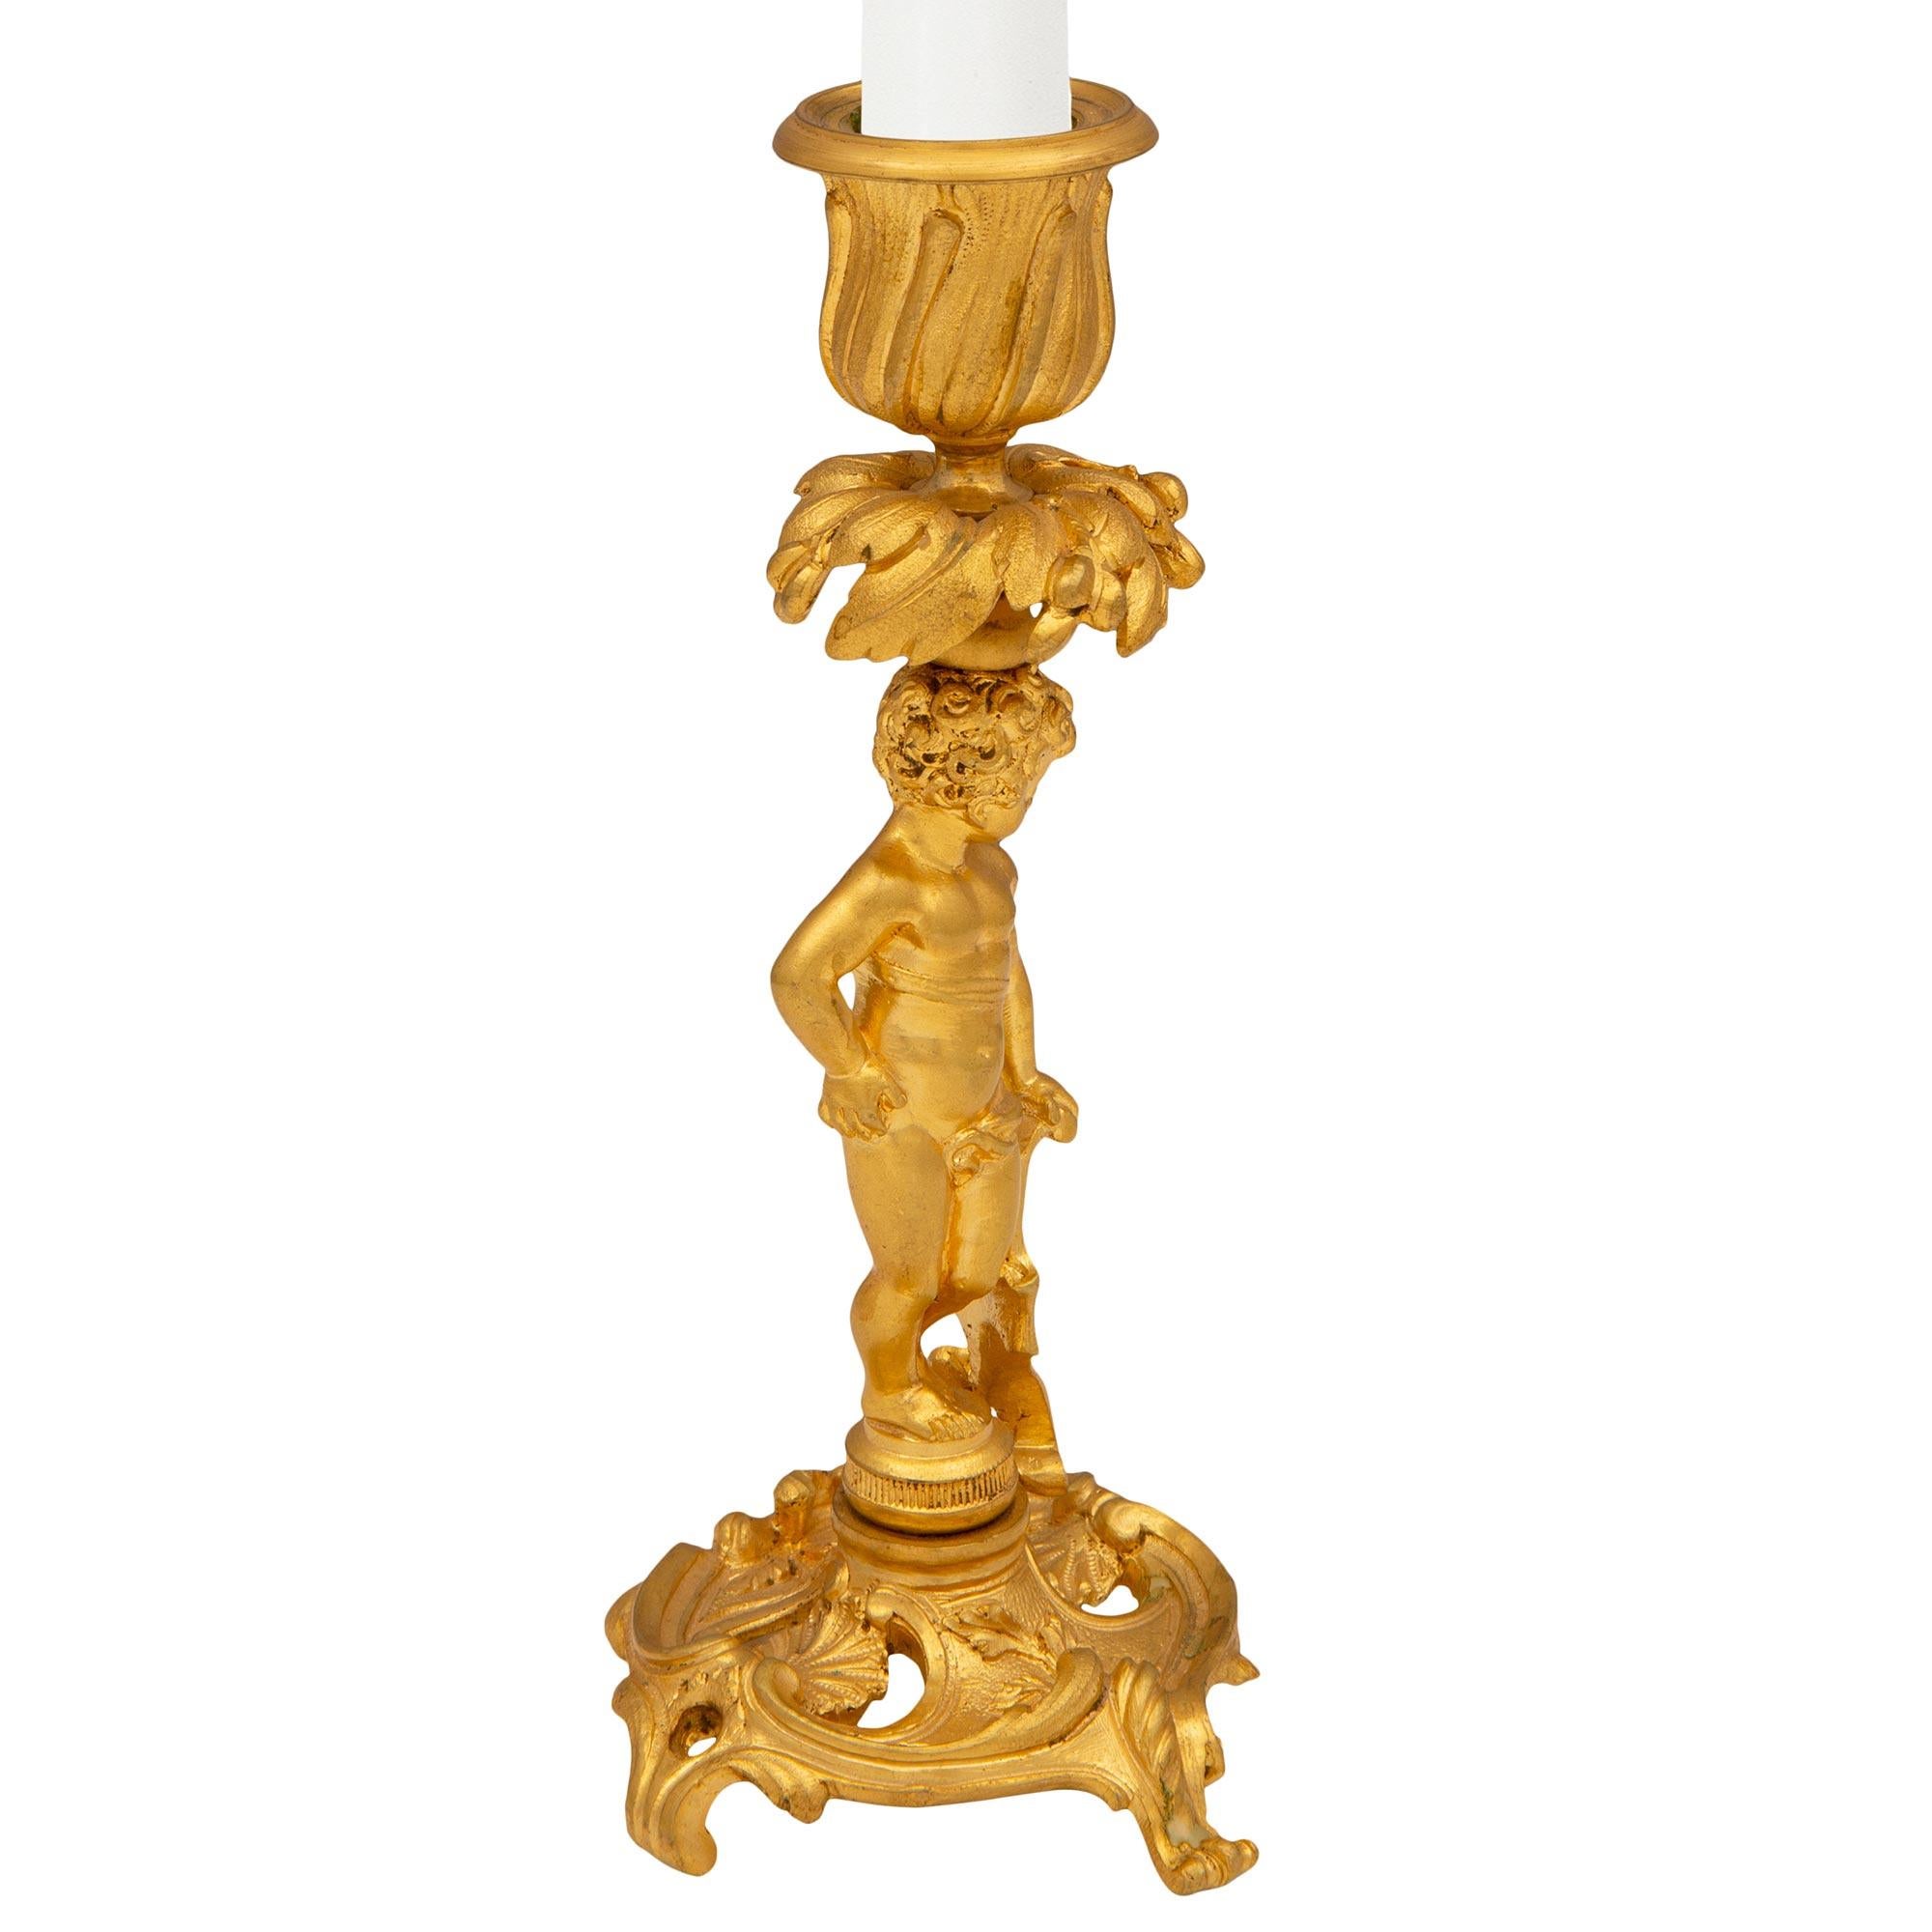 Ein exquisites, echtes Paar französischer Kerzenleuchter aus dem 19. Jahrhundert im Stil Louis XV. aus Ormolu. Jeder Kerzenhalter steht auf einem eleganten, durchbrochenen Rundsockel mit vier verschnörkelten Akanthusblattstützen. In der Mitte stehen